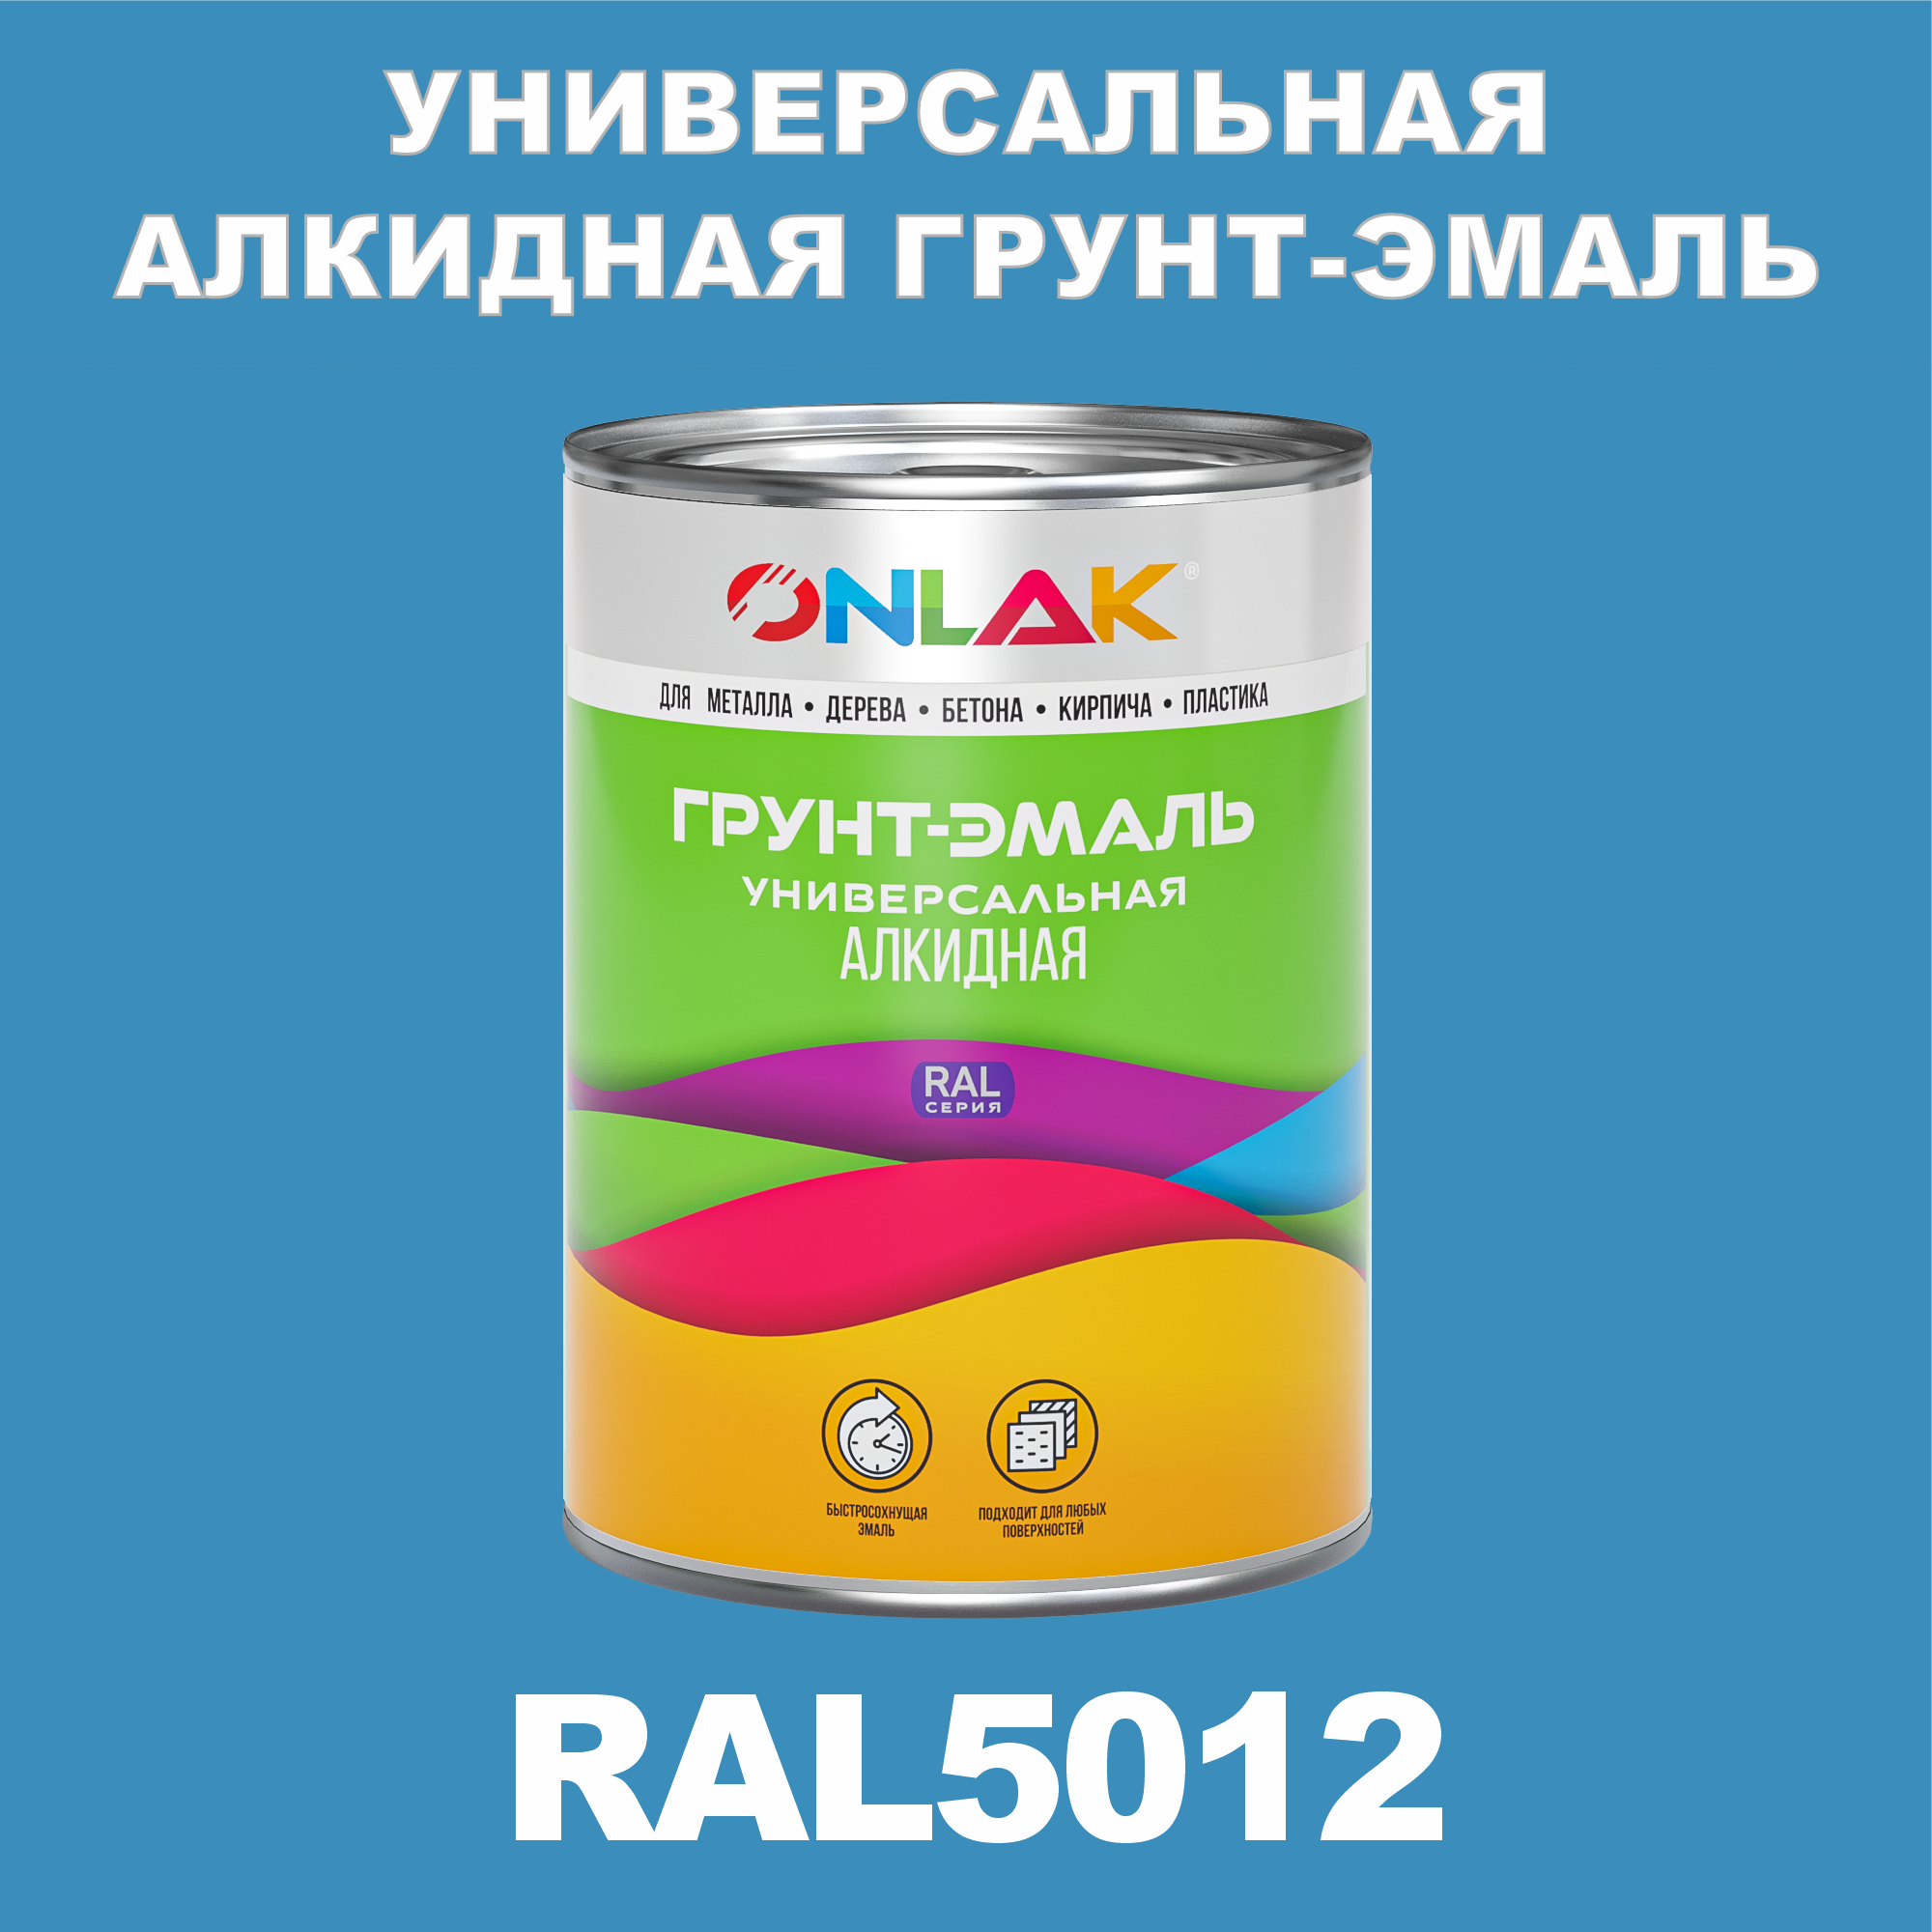 Грунт-эмаль ONLAK 1К RAL5012 антикоррозионная алкидная по металлу по ржавчине 1 кг грунт эмаль neomid по ржавчине быстросохнущая алкидная серая 0 9 кг